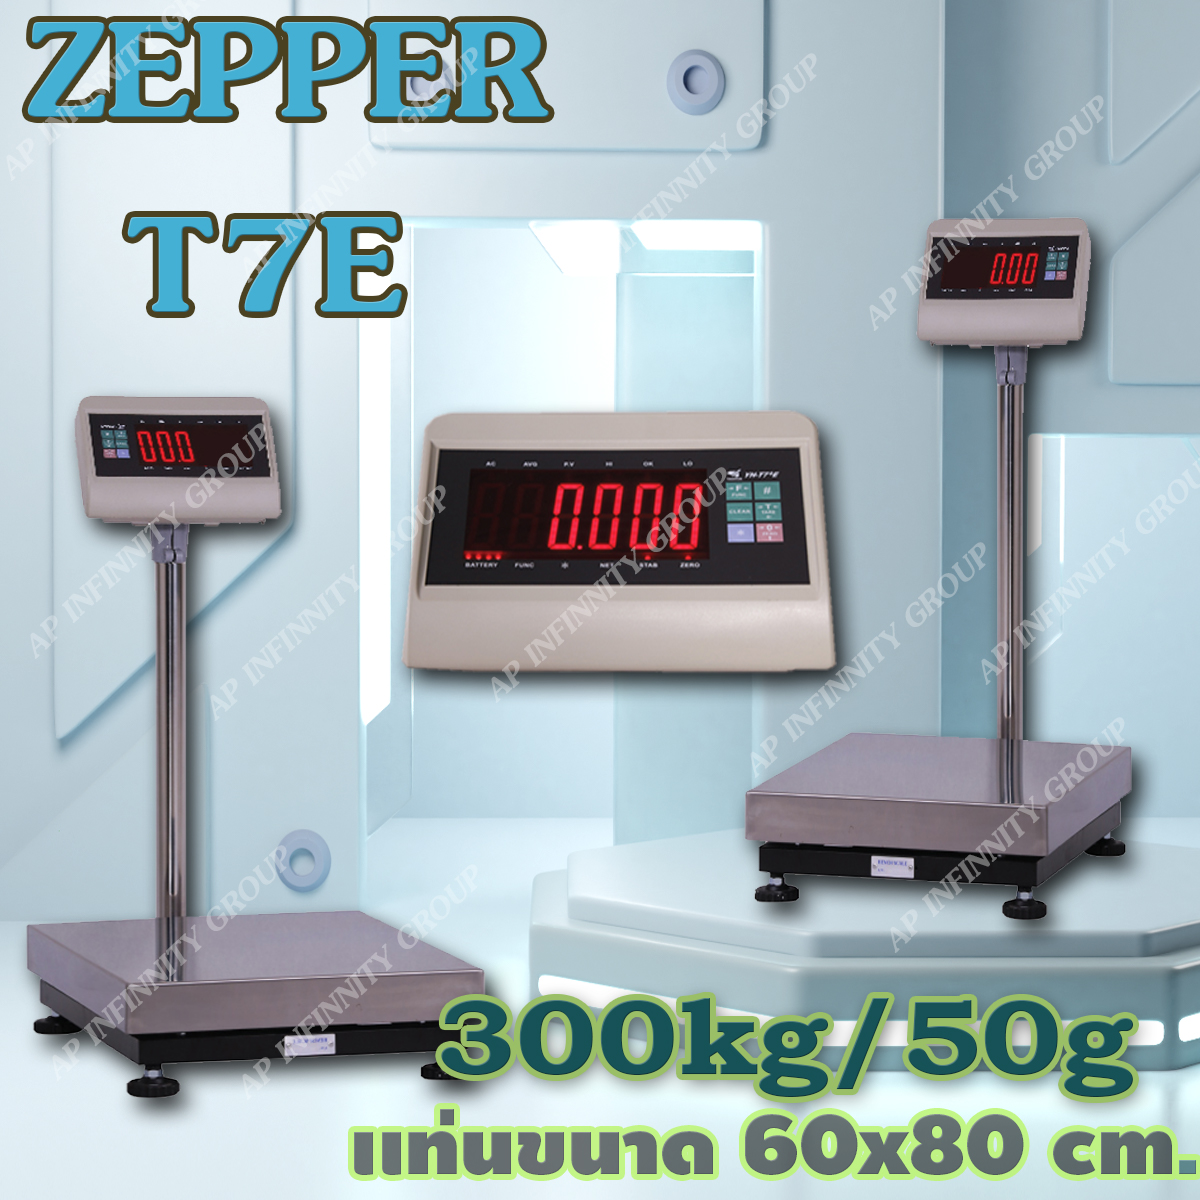 ตาชั่งดิจิตอล เครื่องชั่งดิจิตอล เครื่องชั่งแบบวางพื้น 300kg ละเอียด20g ZEPPER T7E-LB6080-300 Digital Scale platform scale ขนาดแท่นชั่ง60x80cm พร้อมช่องต่อ RS-232C (RS-232C Serial Interface) รูปที่ 1